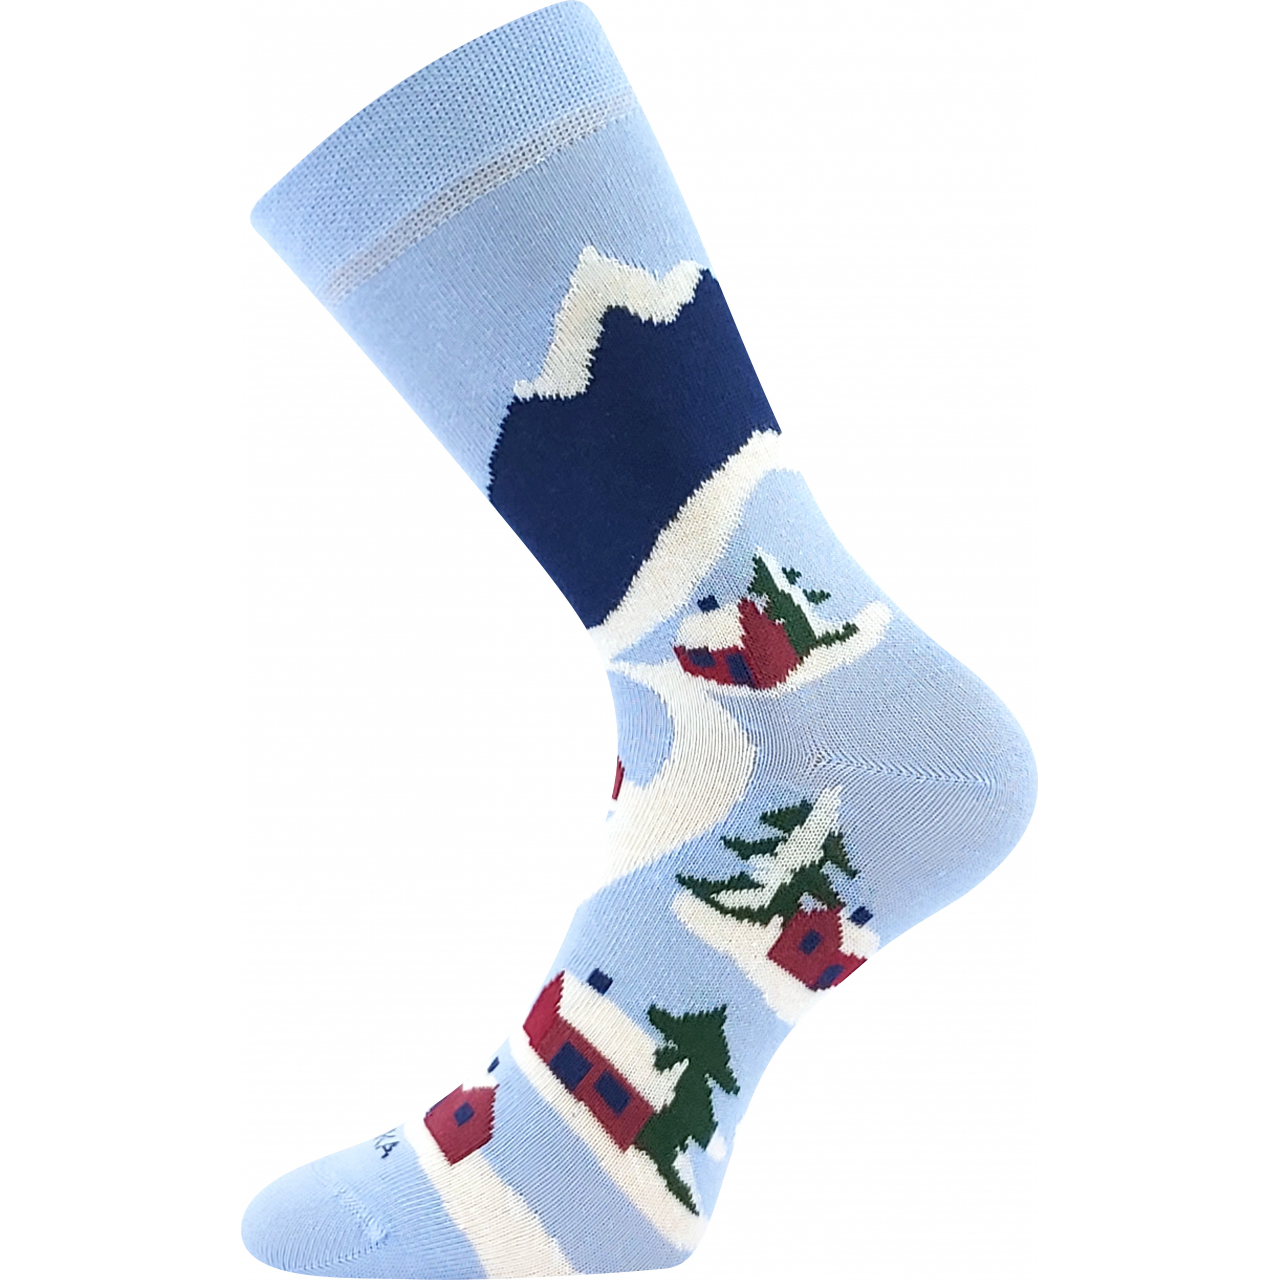 Ponožky slabé unisex Lonka Damerry Hory - modré, 43-46